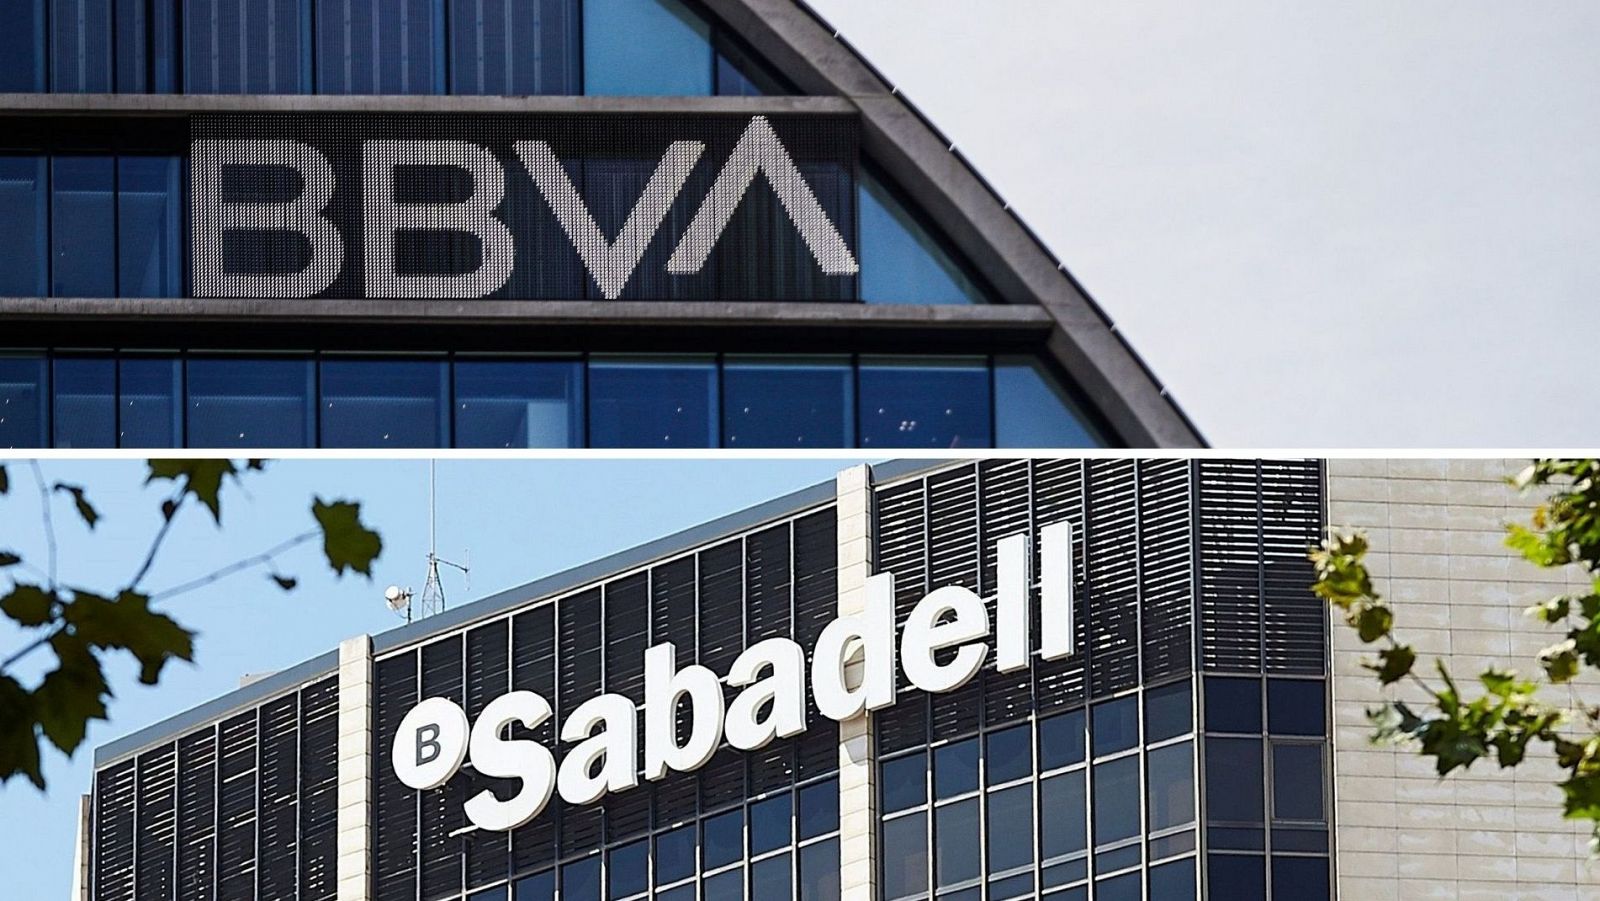 Imatges de les seus centrals del BBVA i el Banc Sabadell